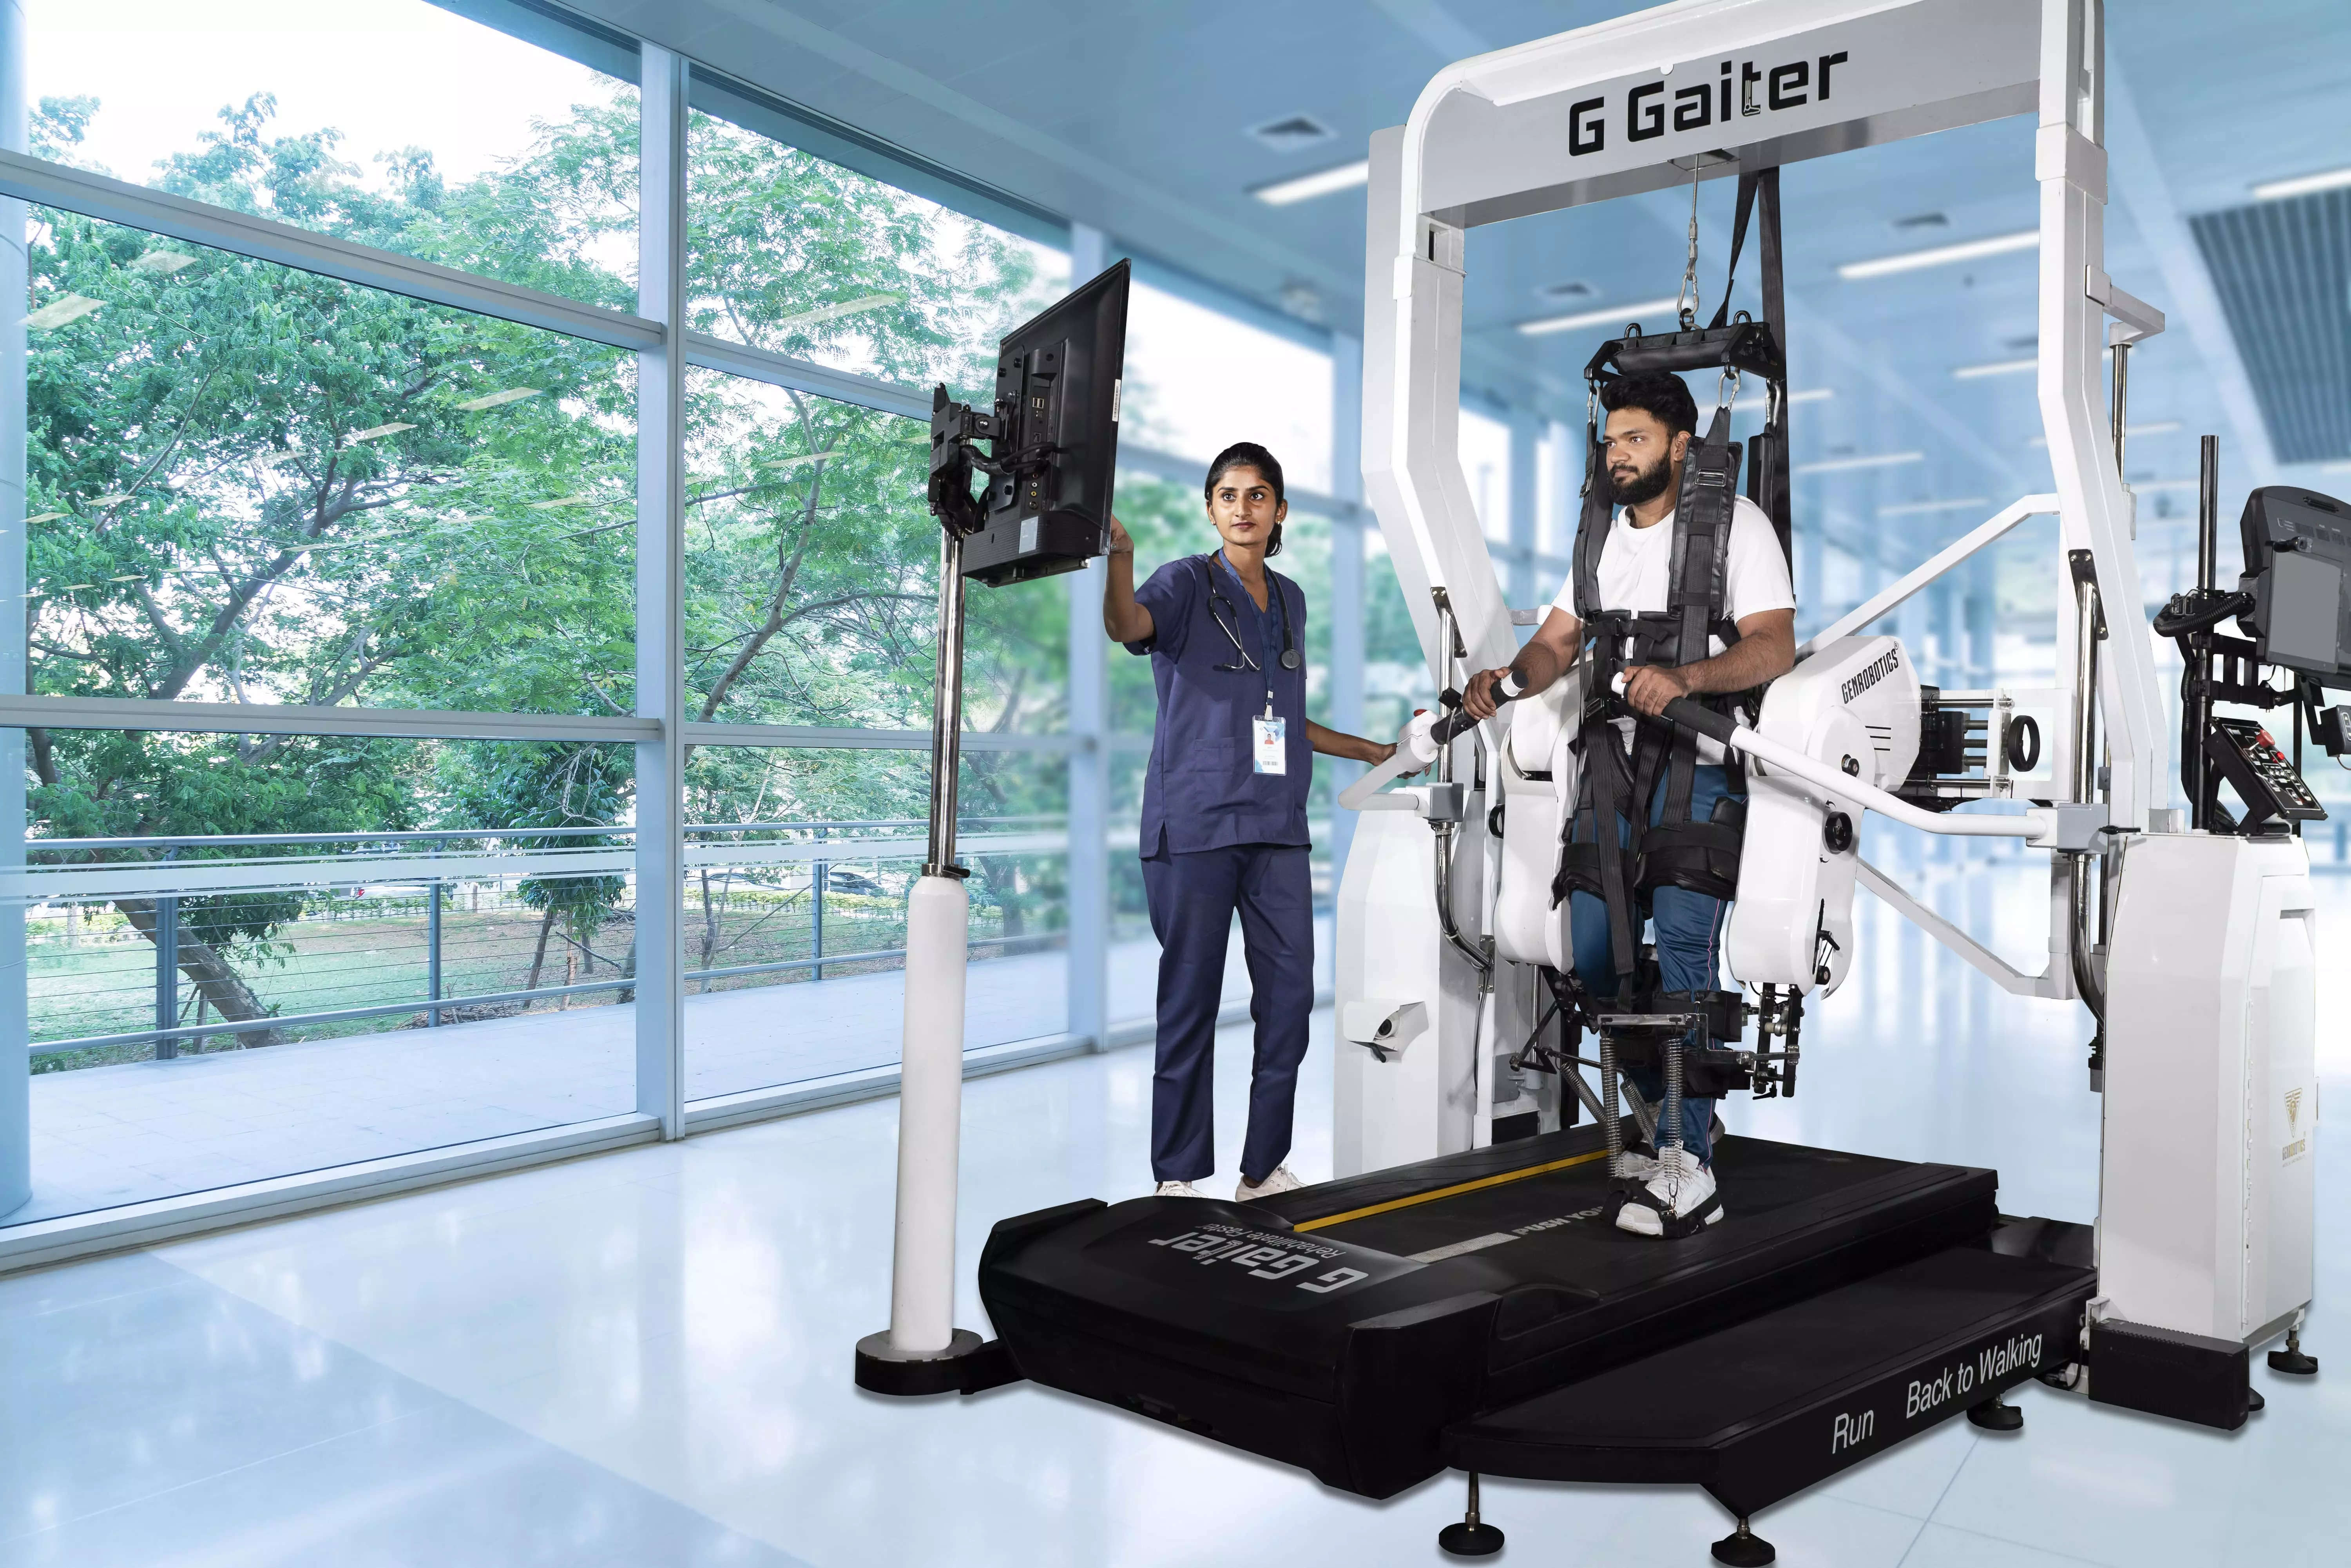 Genrobotics launches robotic gait trainer ‘G-Gaiter’